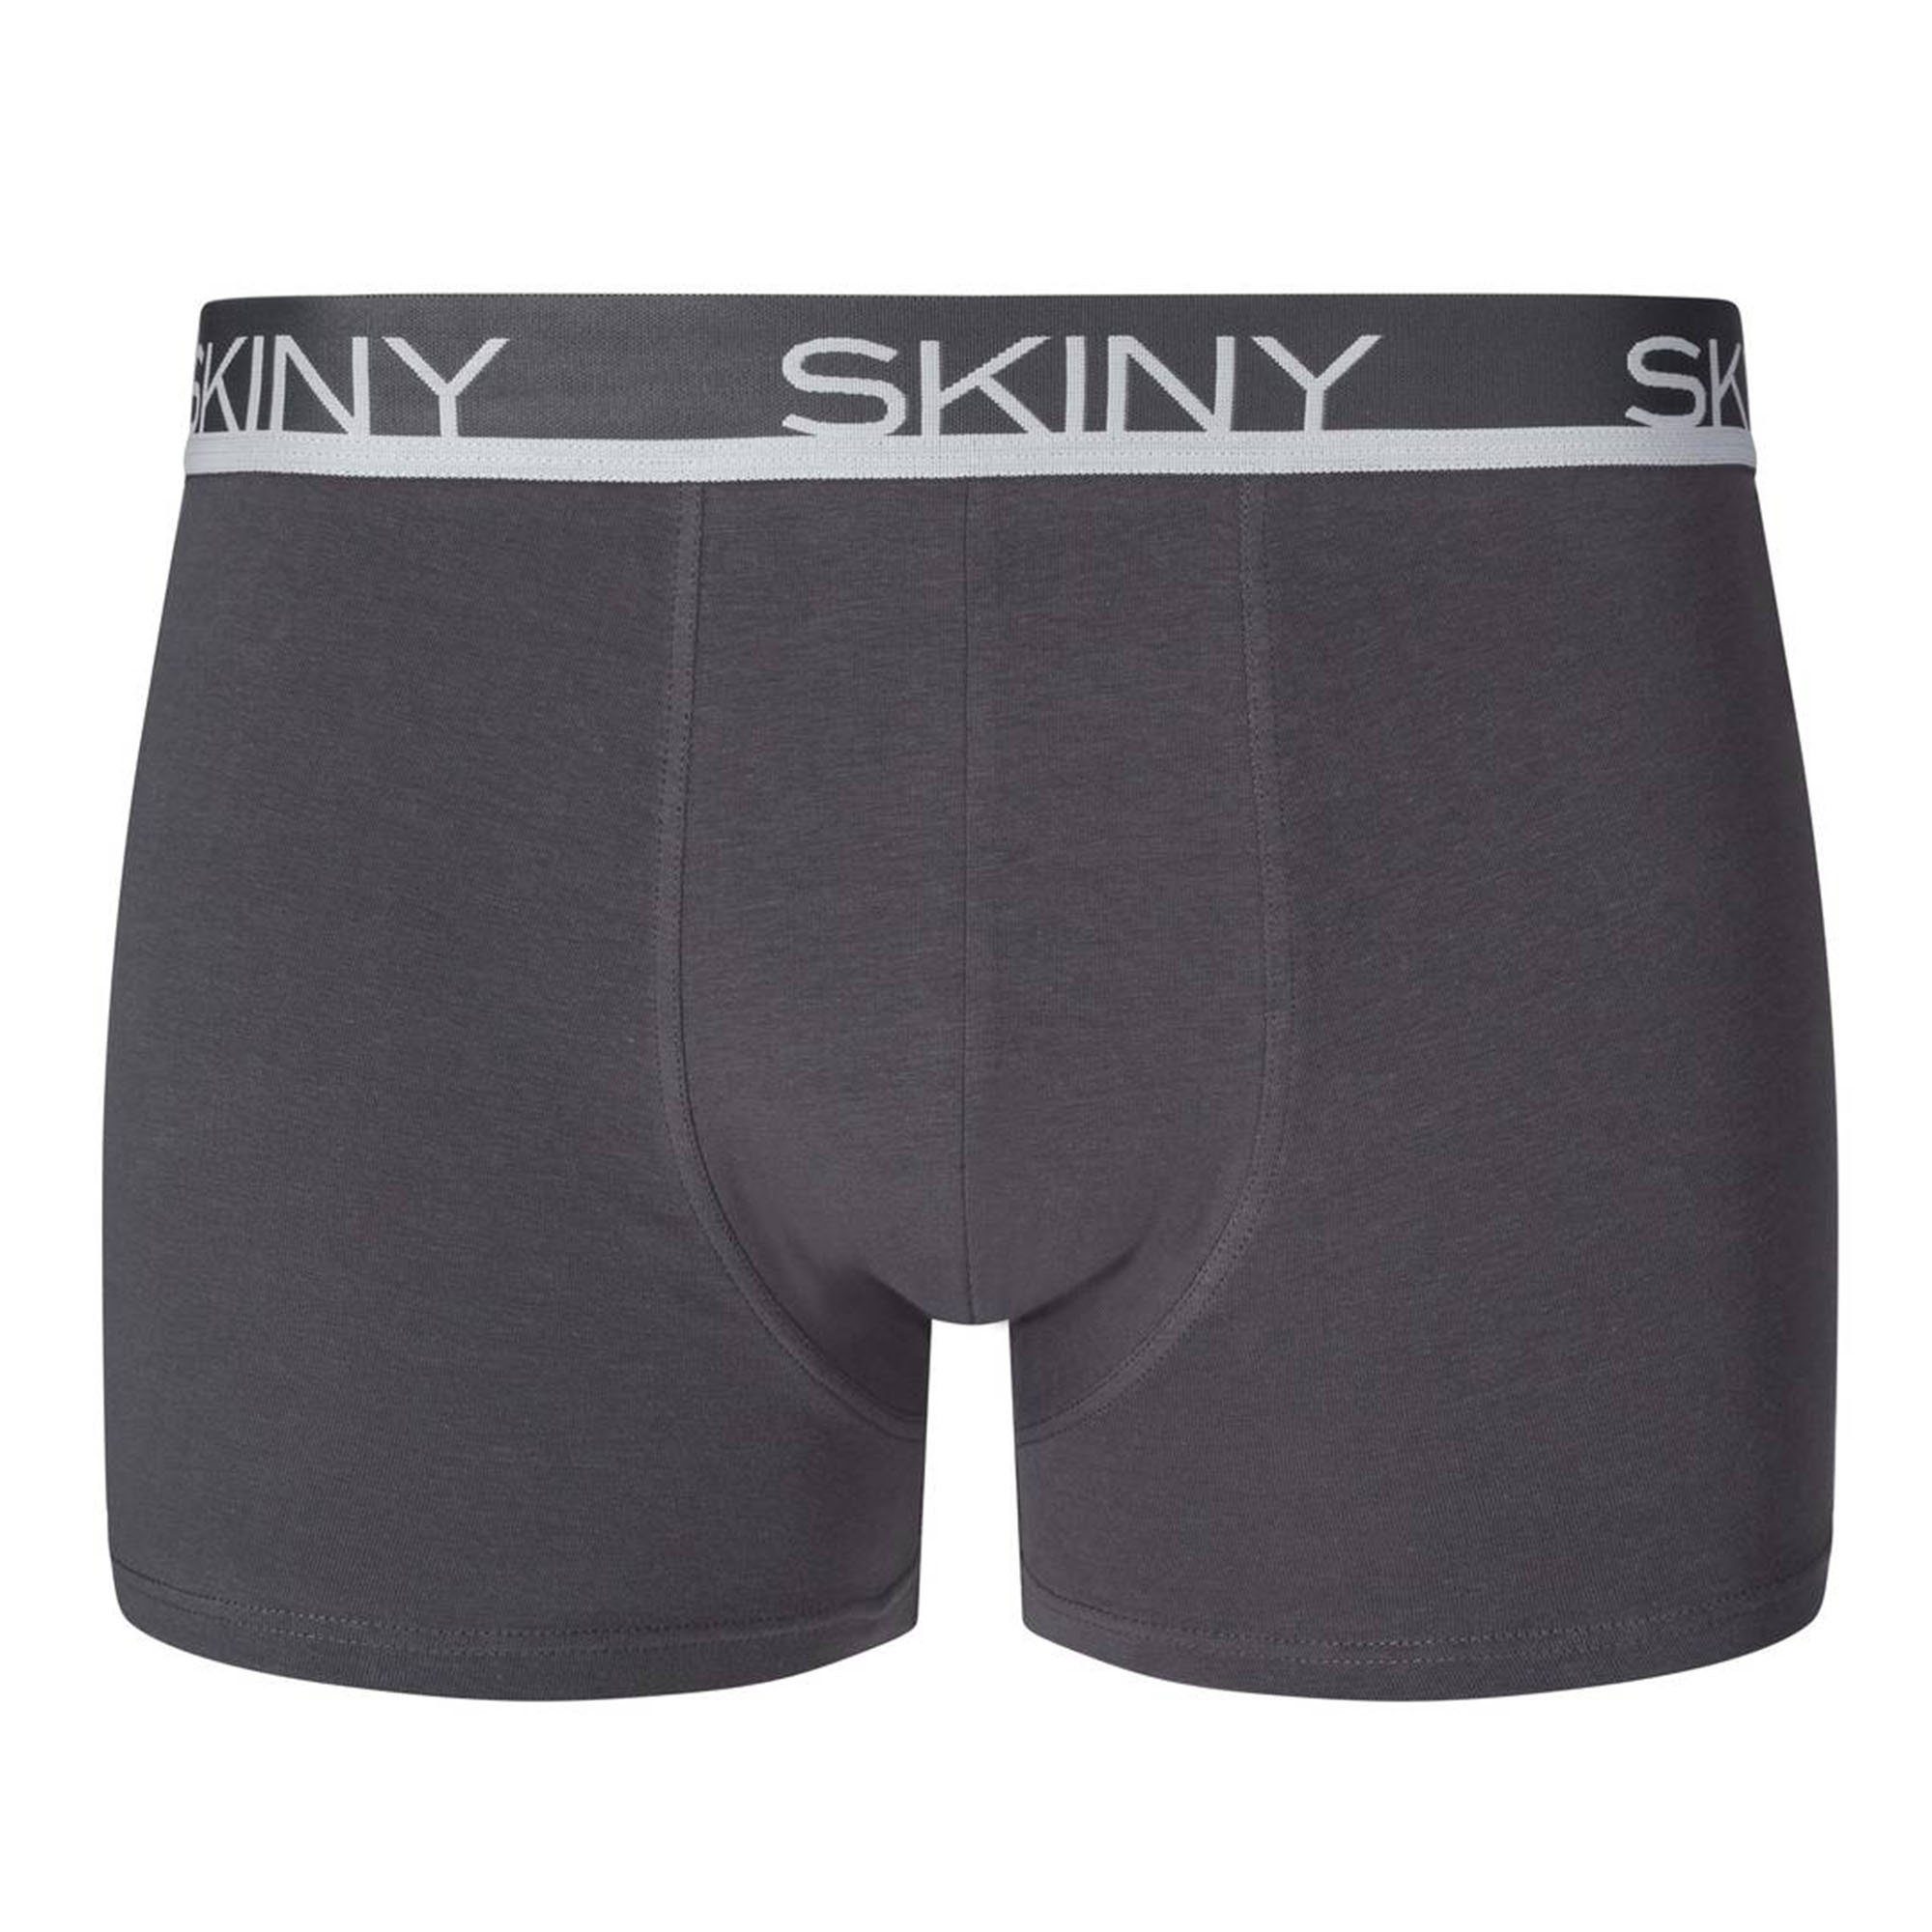 Skiny Boxer Herren Boxer Pack Shorts Pants Trunks, 3er - Grau/Blau/Schwarz